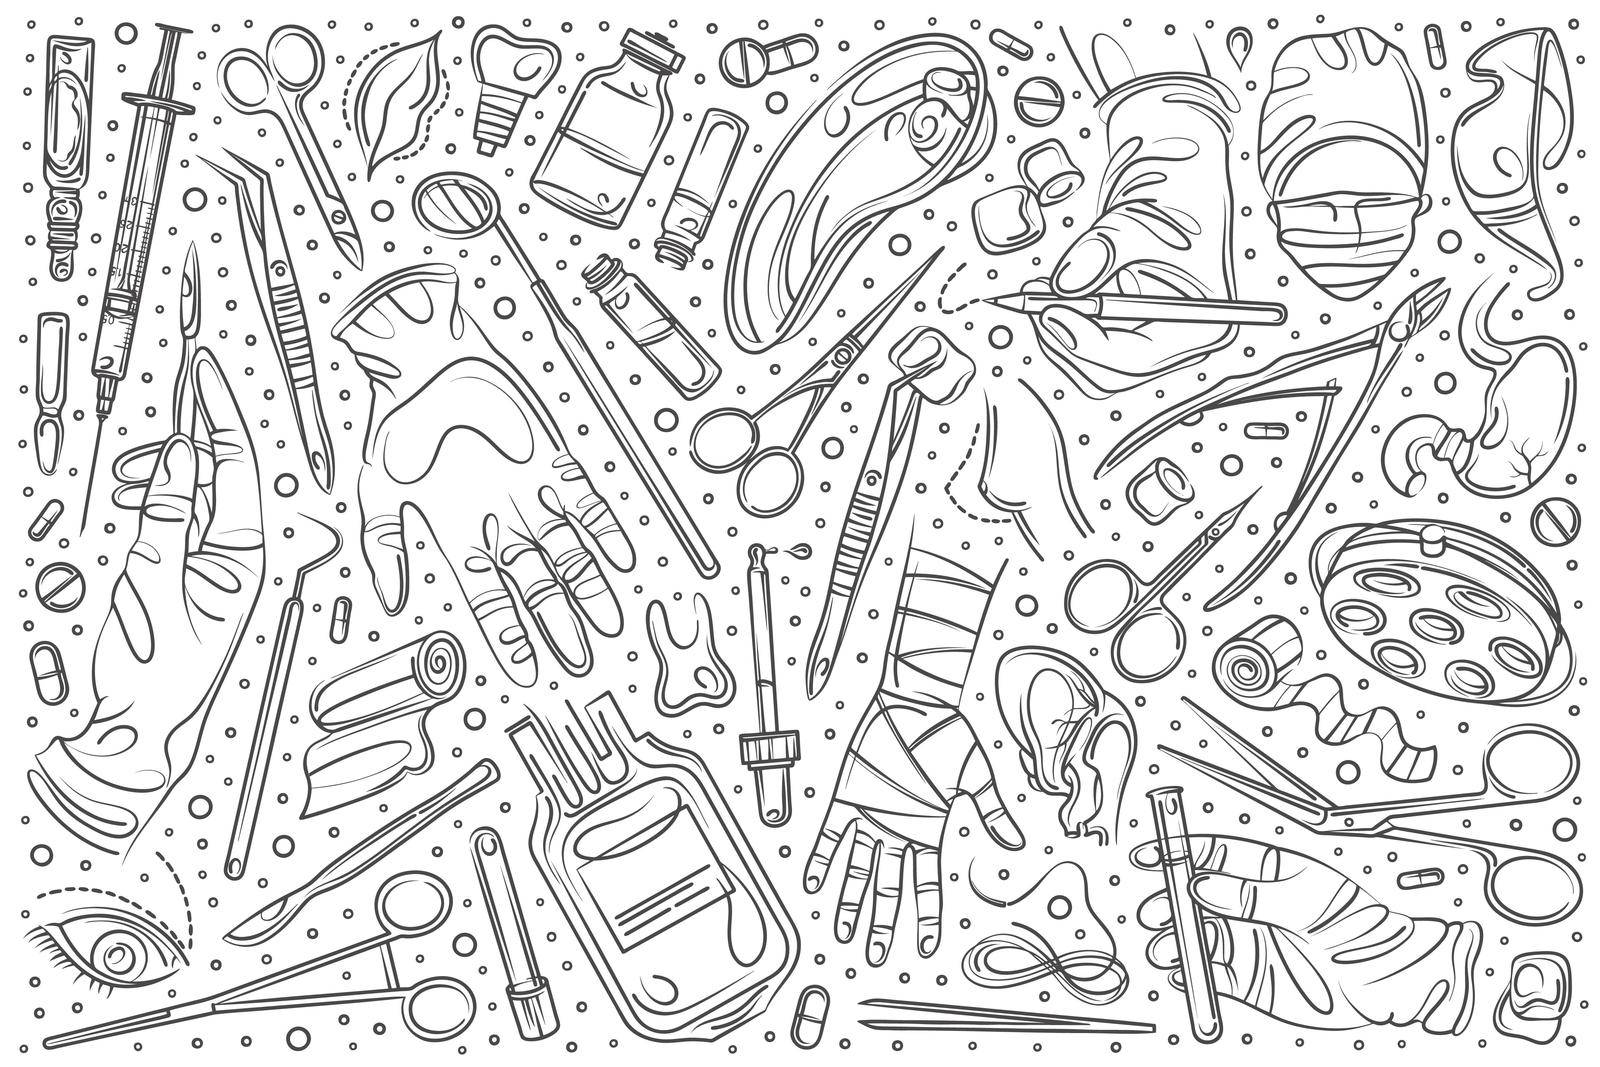 Hand drawn set doodle vector illustration background